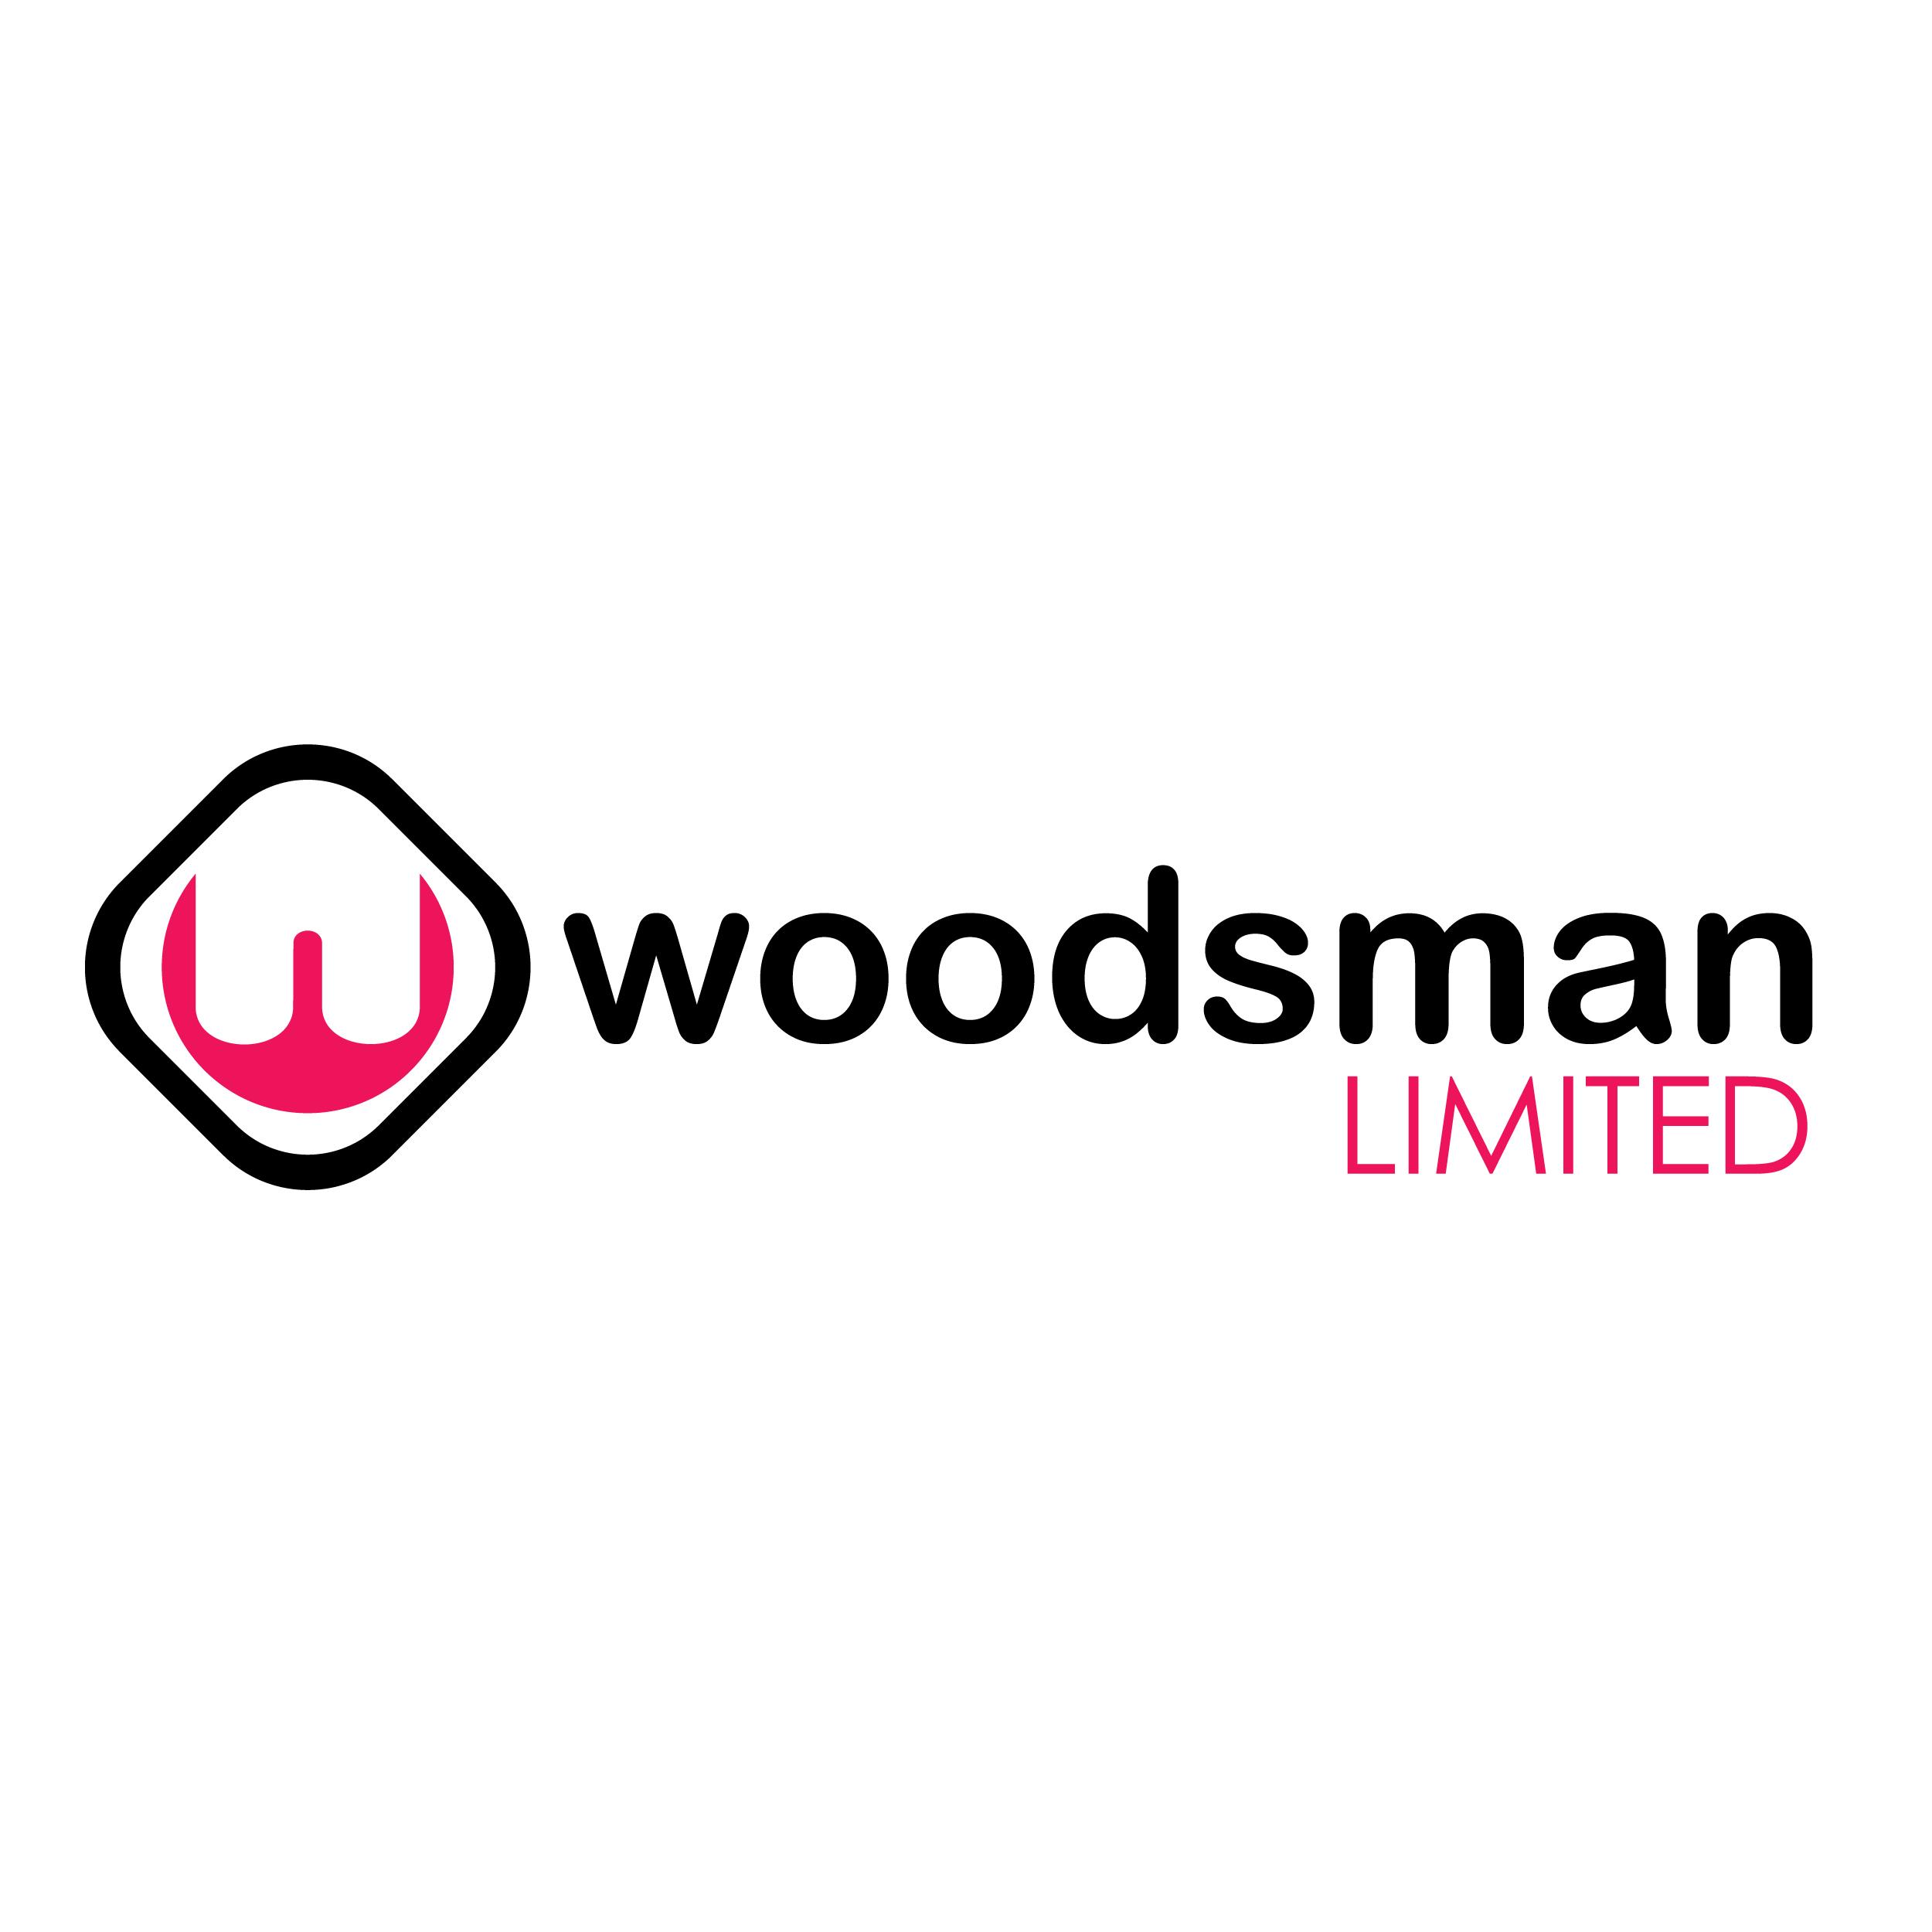 Woodsman Logo - brandvinegroup Woodsman Logo » brandvinegroup